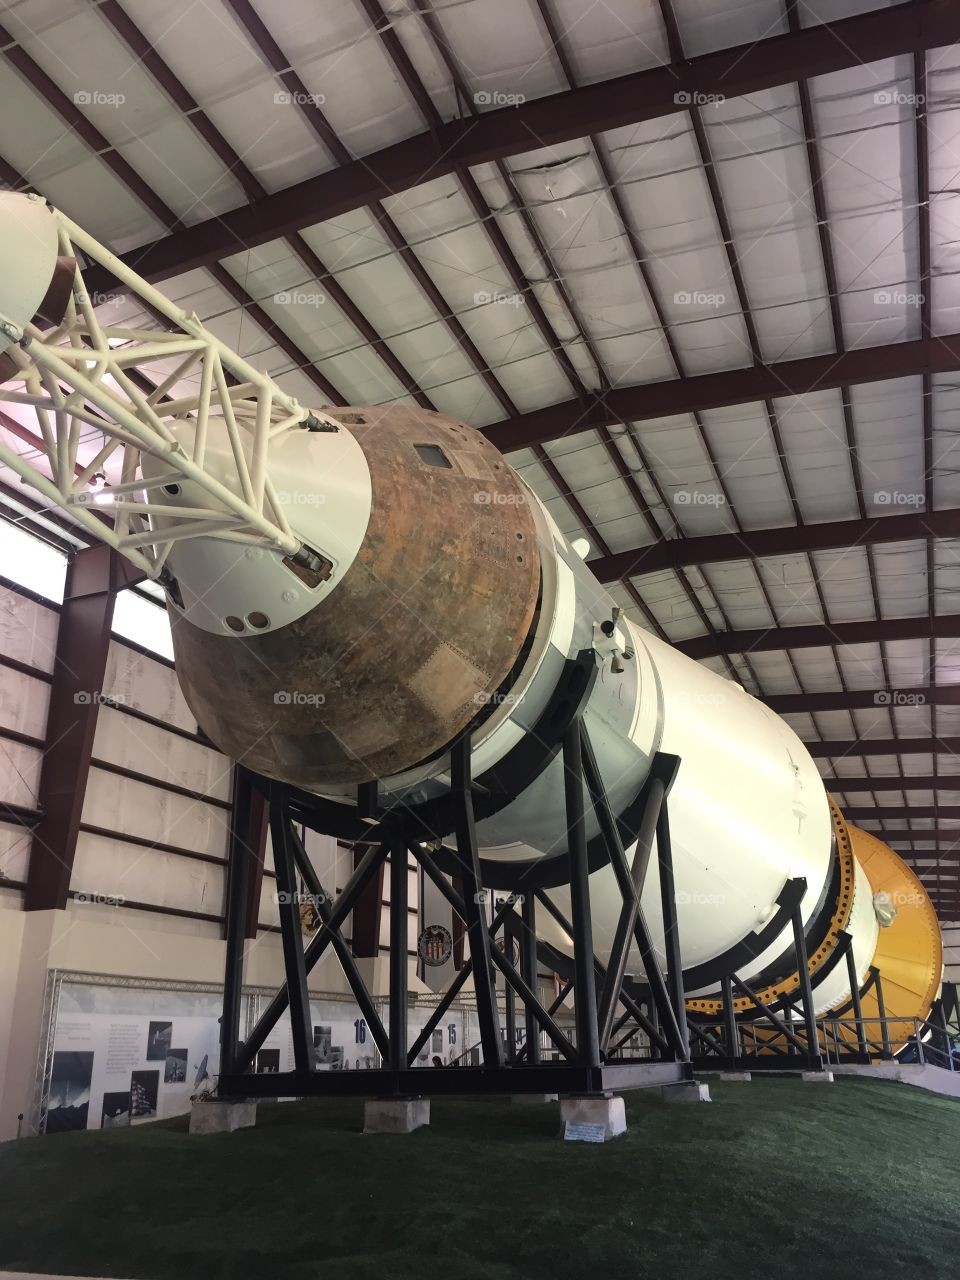 Space Center Houston. Saturn rocket